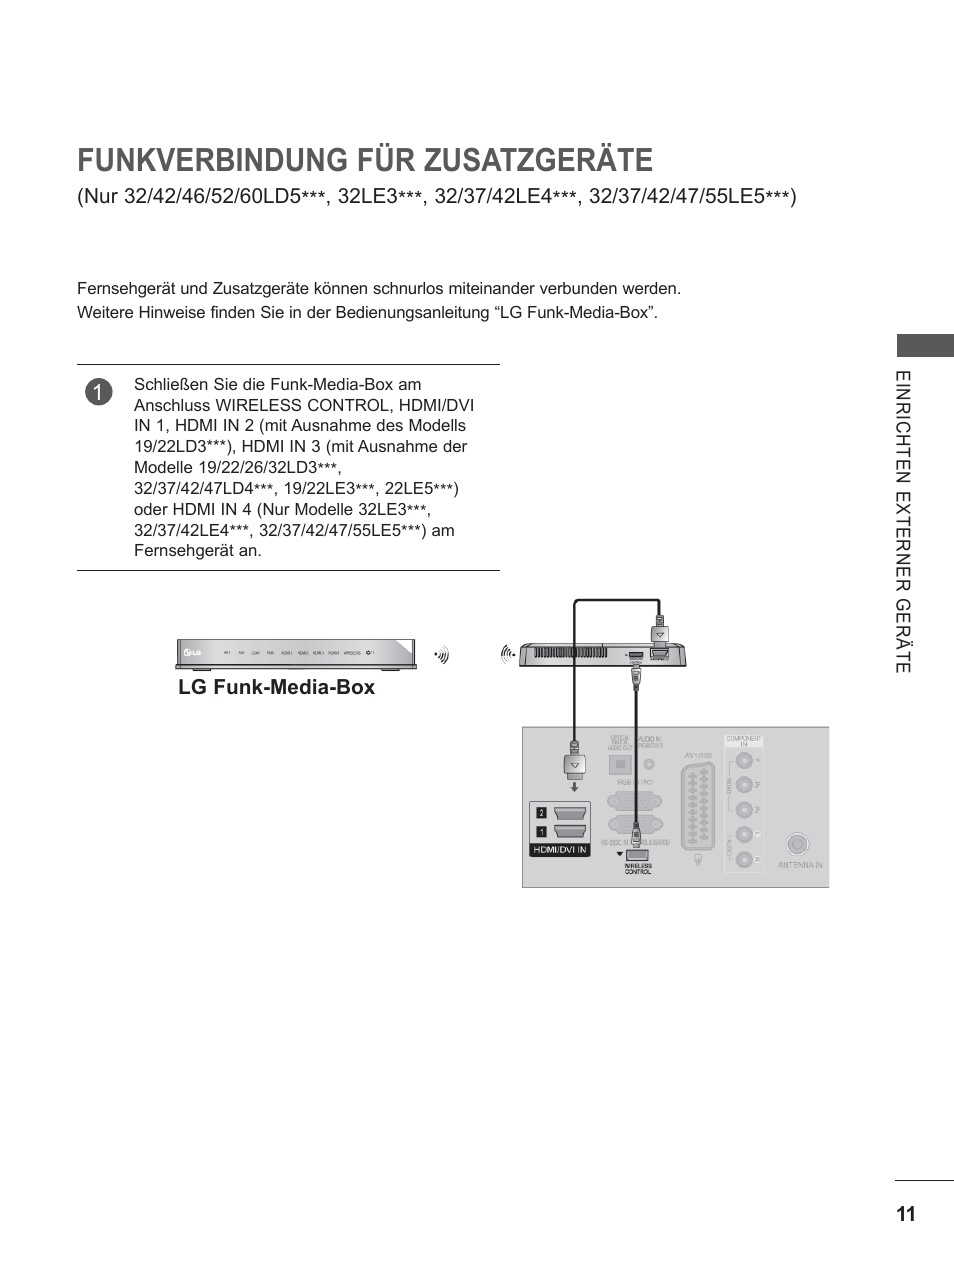 Funkverbindung für zusatzgeräte, Kopfhörereinstellungen | LG 22LD350C Benutzerhandbuch | Seite 59 / 206